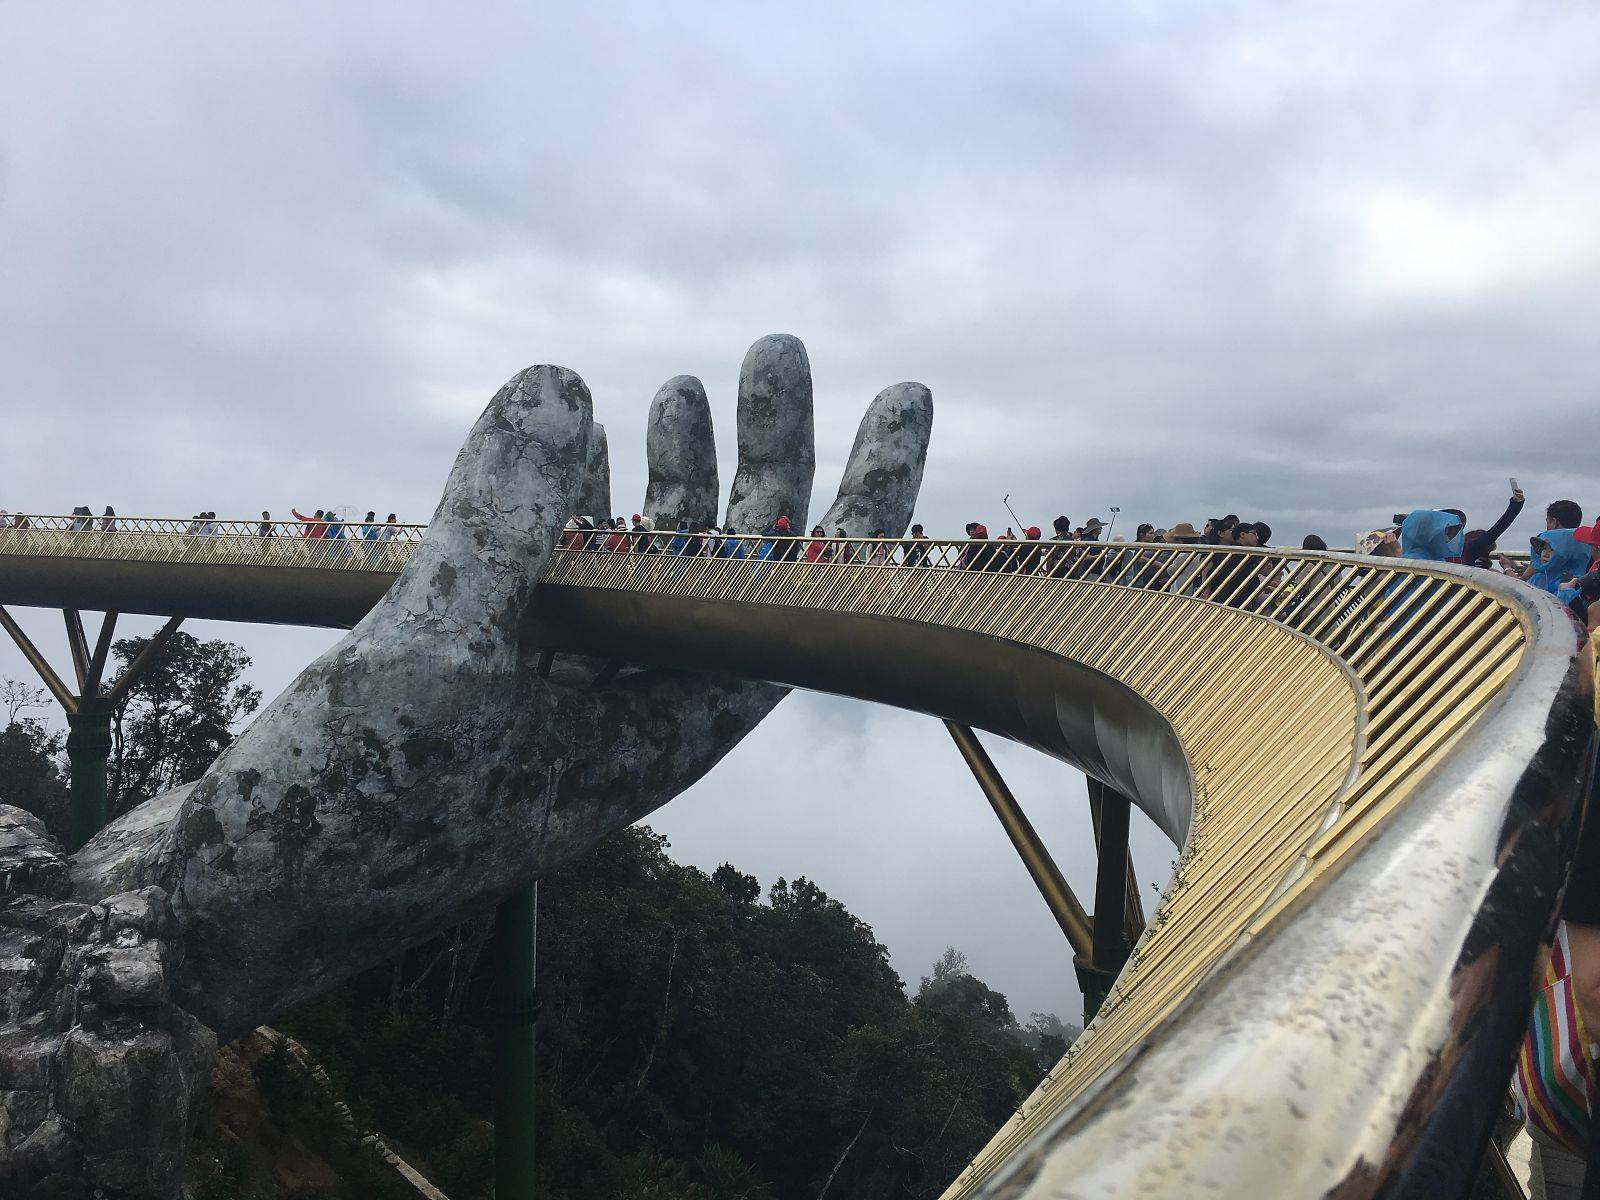 Golden Bridge "In the Hands of God", Ba Na Hills Park, Danang, Vietnam